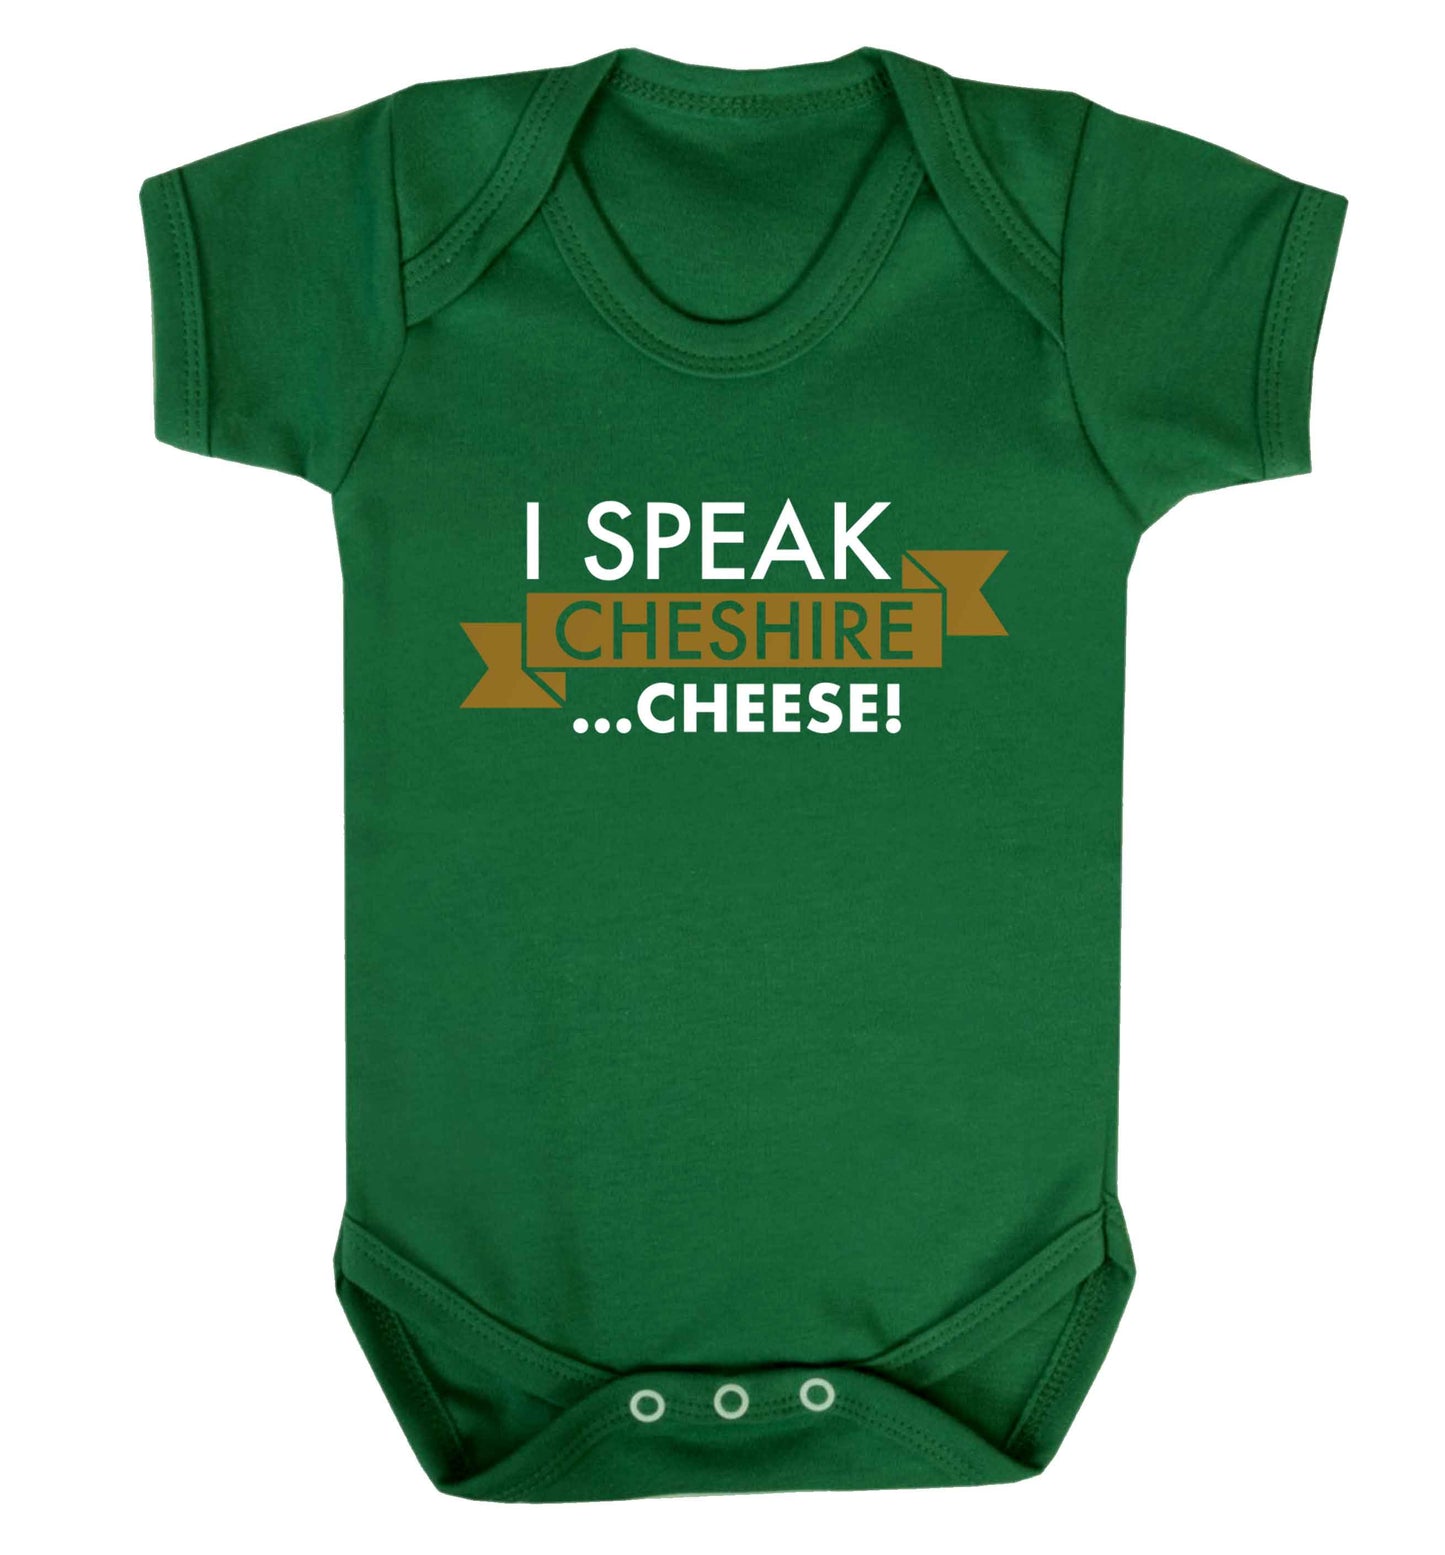 I speak Cheshire cheese Baby Vest green 18-24 months